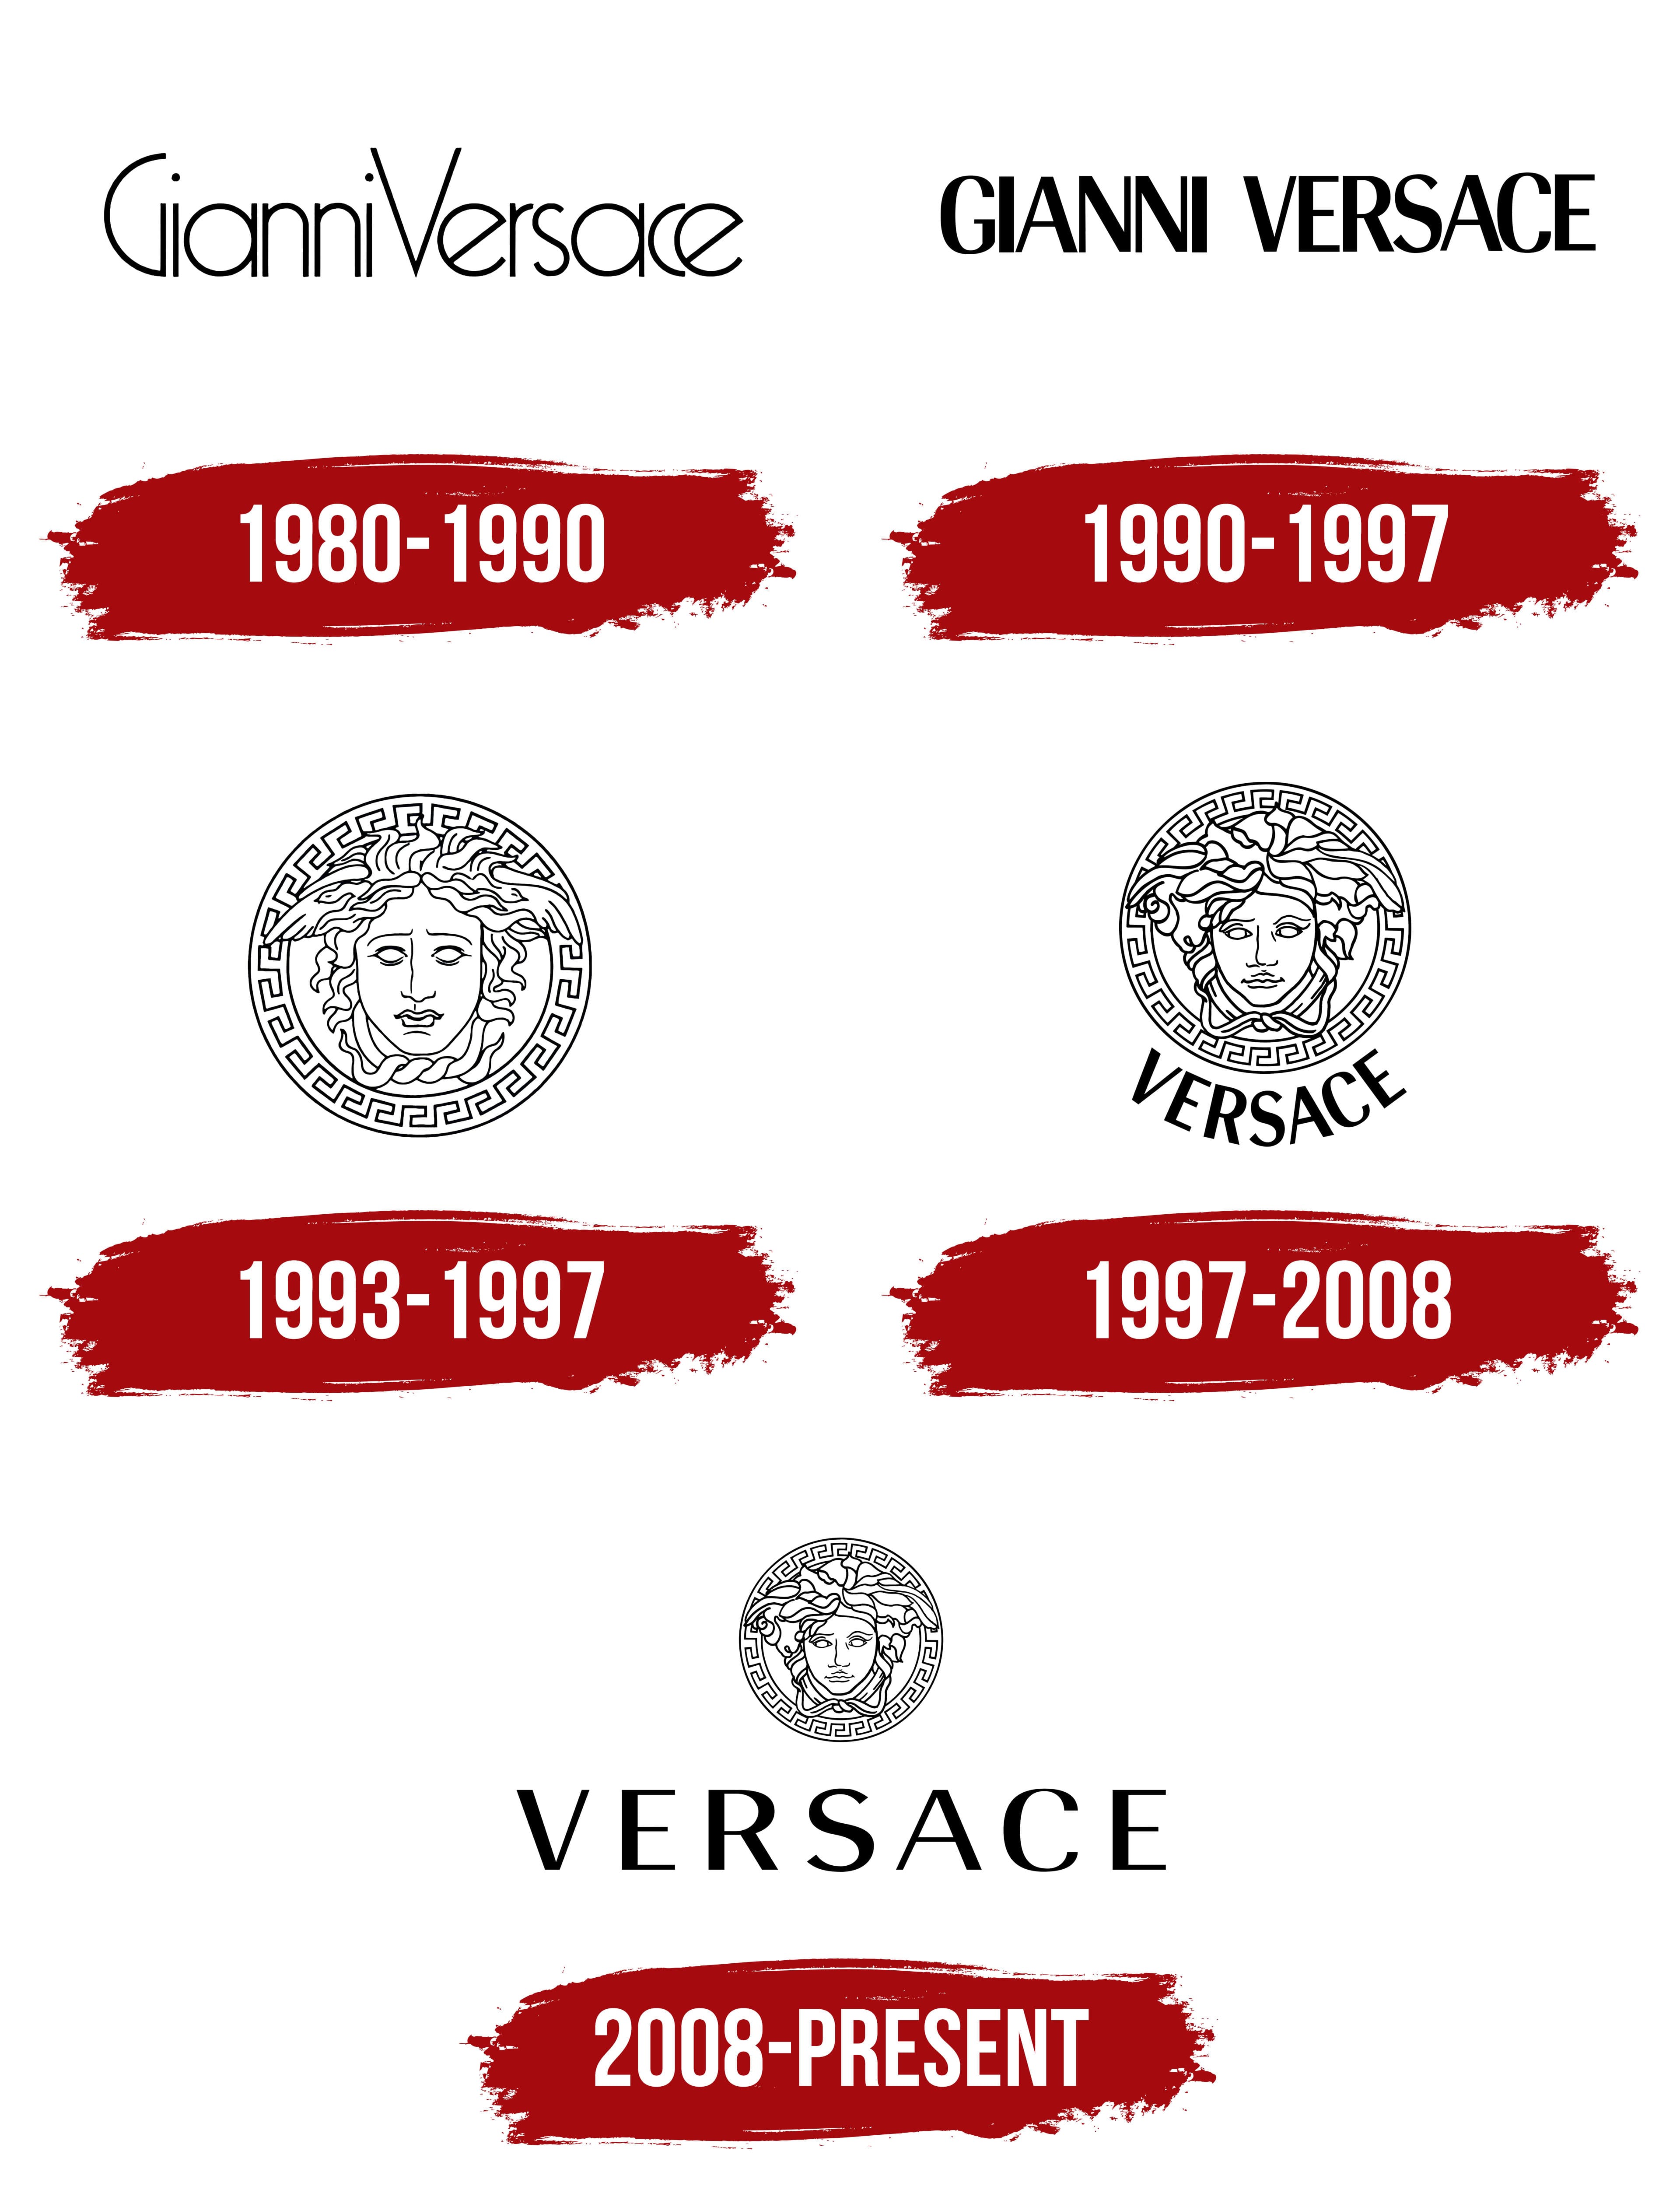 Thiết kế versace logos thể hiện sự tinh tế và quý phái